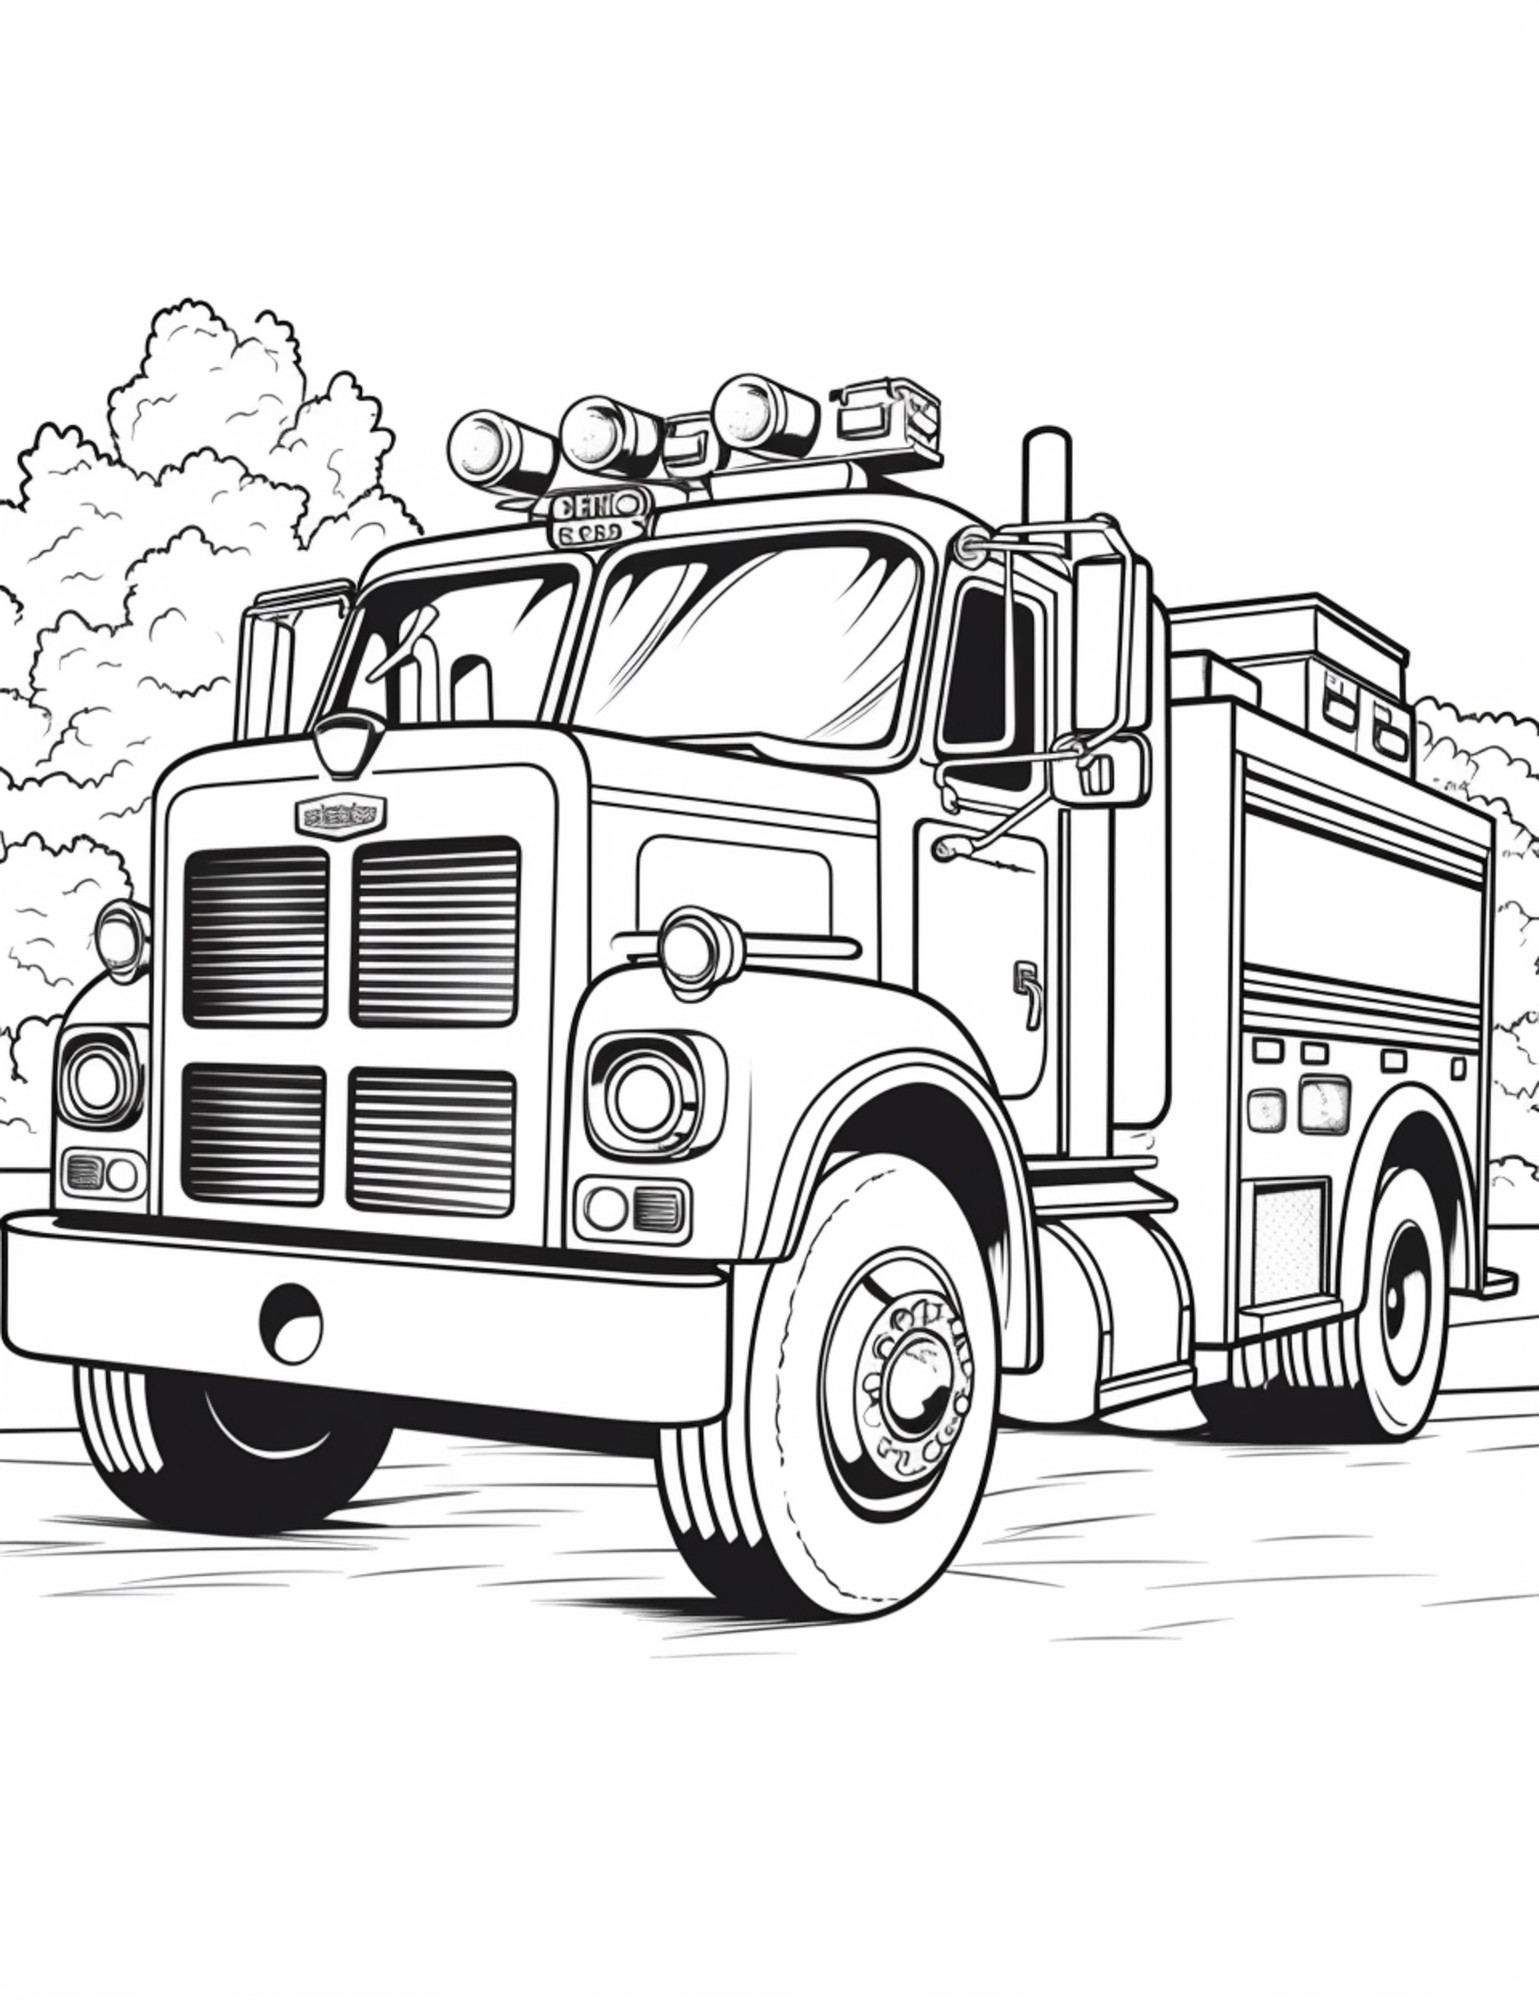 Раскраска для детей: пожарная машина «Пожарник на колесах»